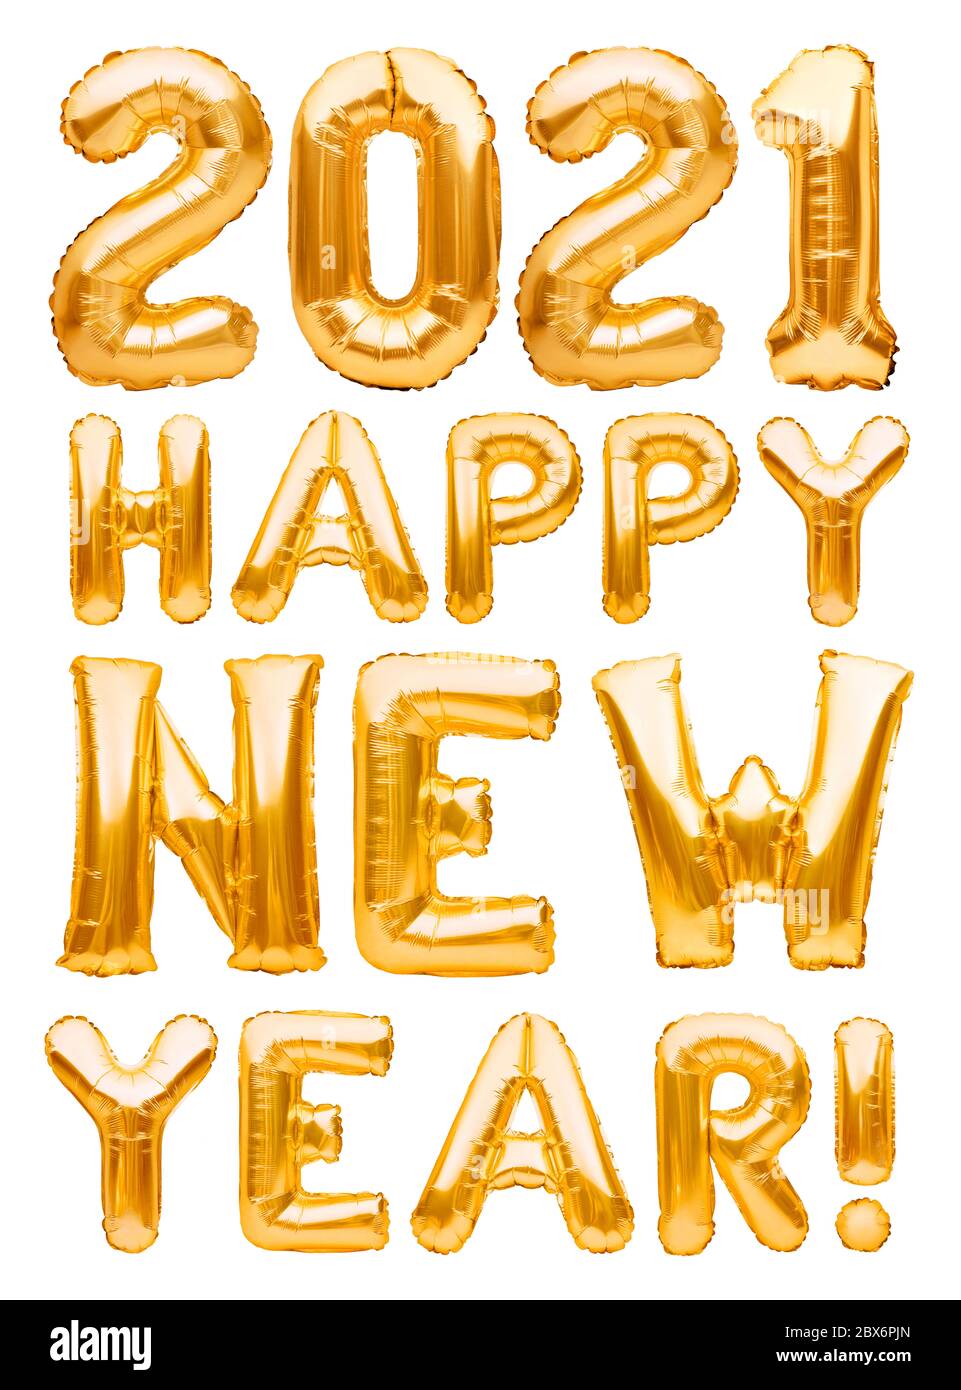 Bonne année 2021 phrase faite de ballons gonflables dorés isolés sur blanc. Ballons d'hélium formant Bonne année 2021 félicitations, feuille Banque D'Images